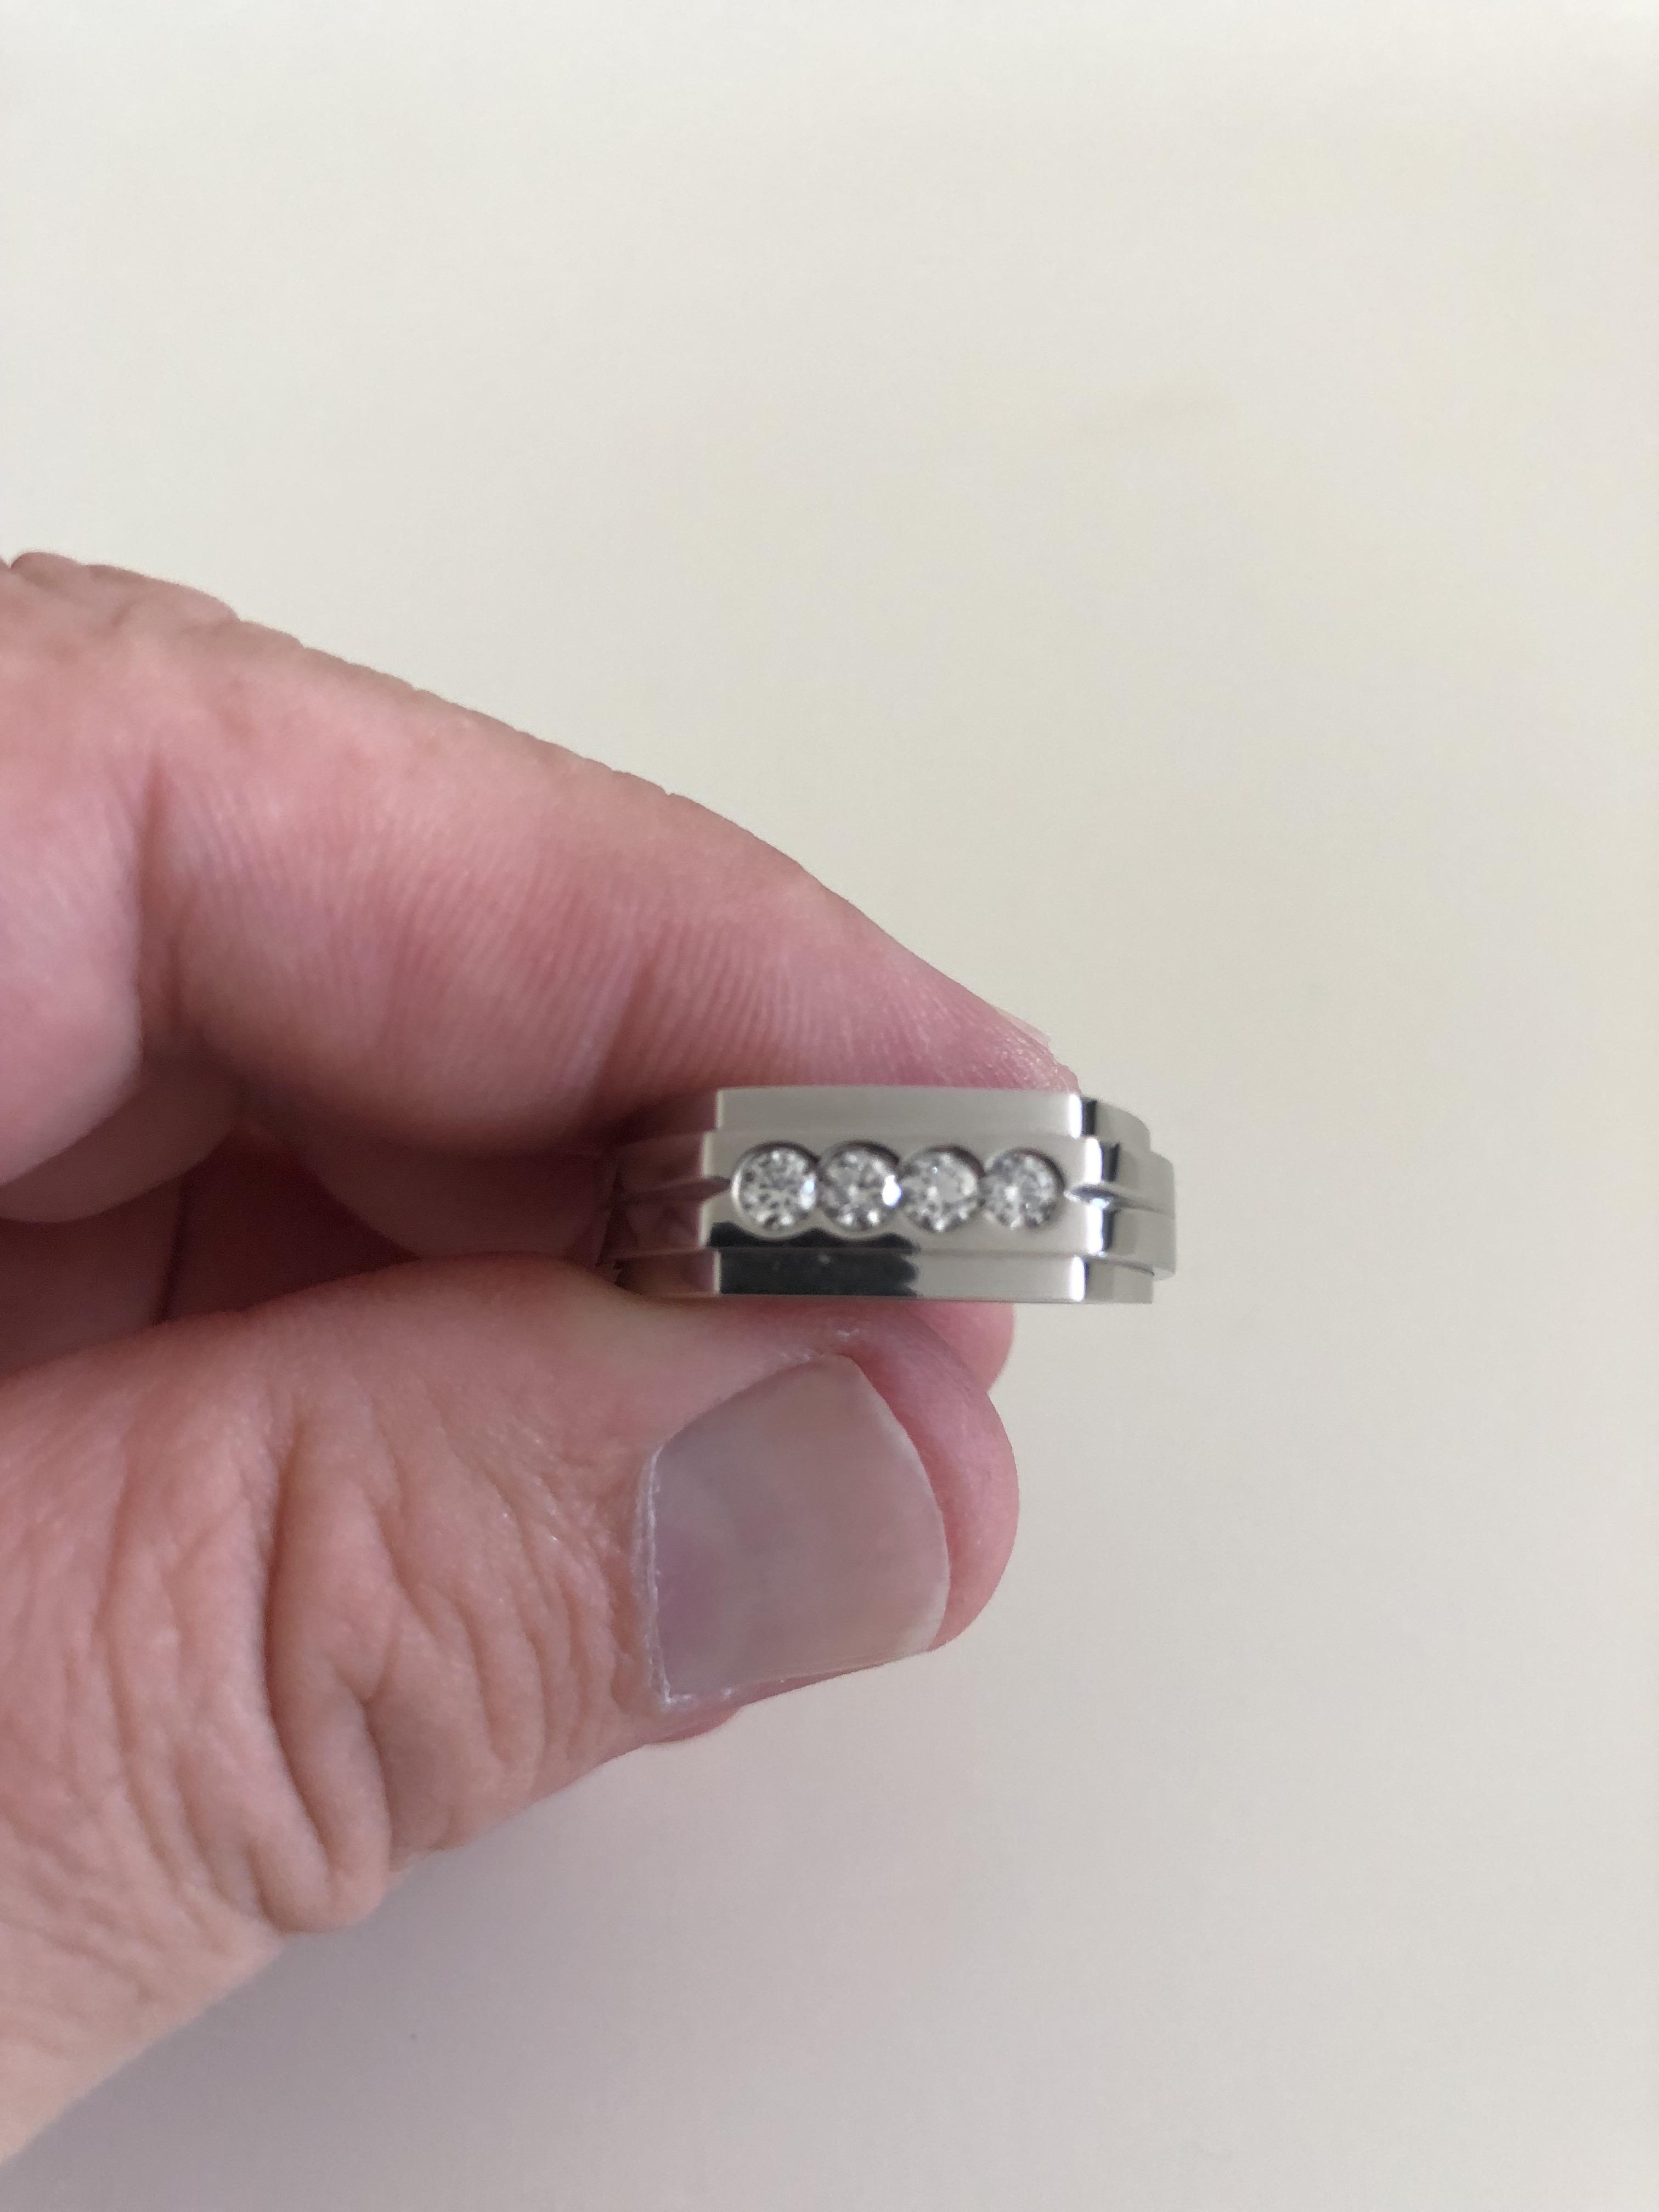 Мужское кольцо с бриллиантами(0,42 ct.) из платины